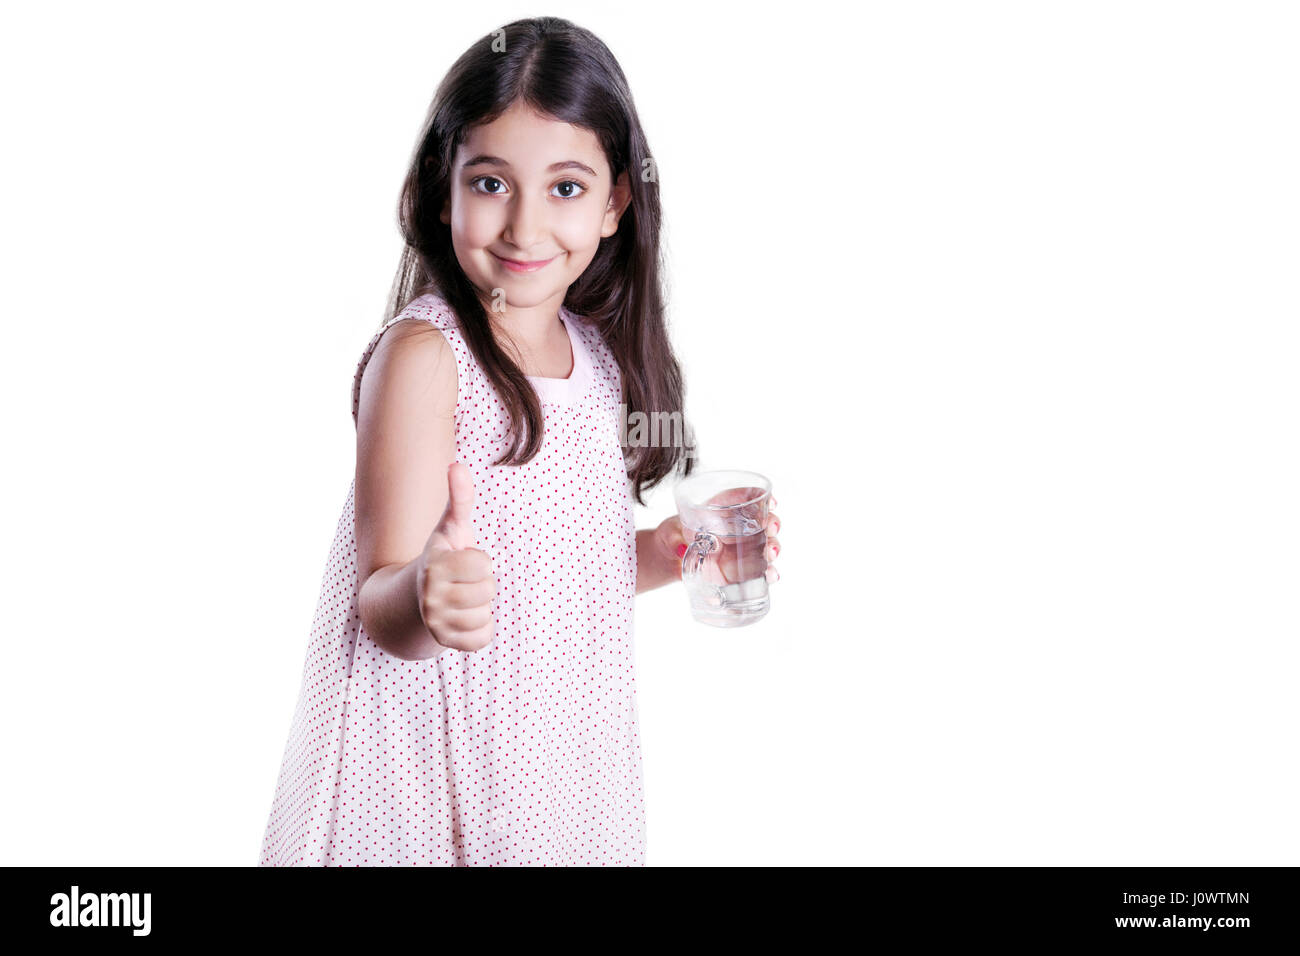 Bella felice bambina con lunghi capelli scuri e il vestito tenendo un bicchiere di acqua e mostrando il pollice. studio shot, isolato su sfondo bianco. Foto Stock